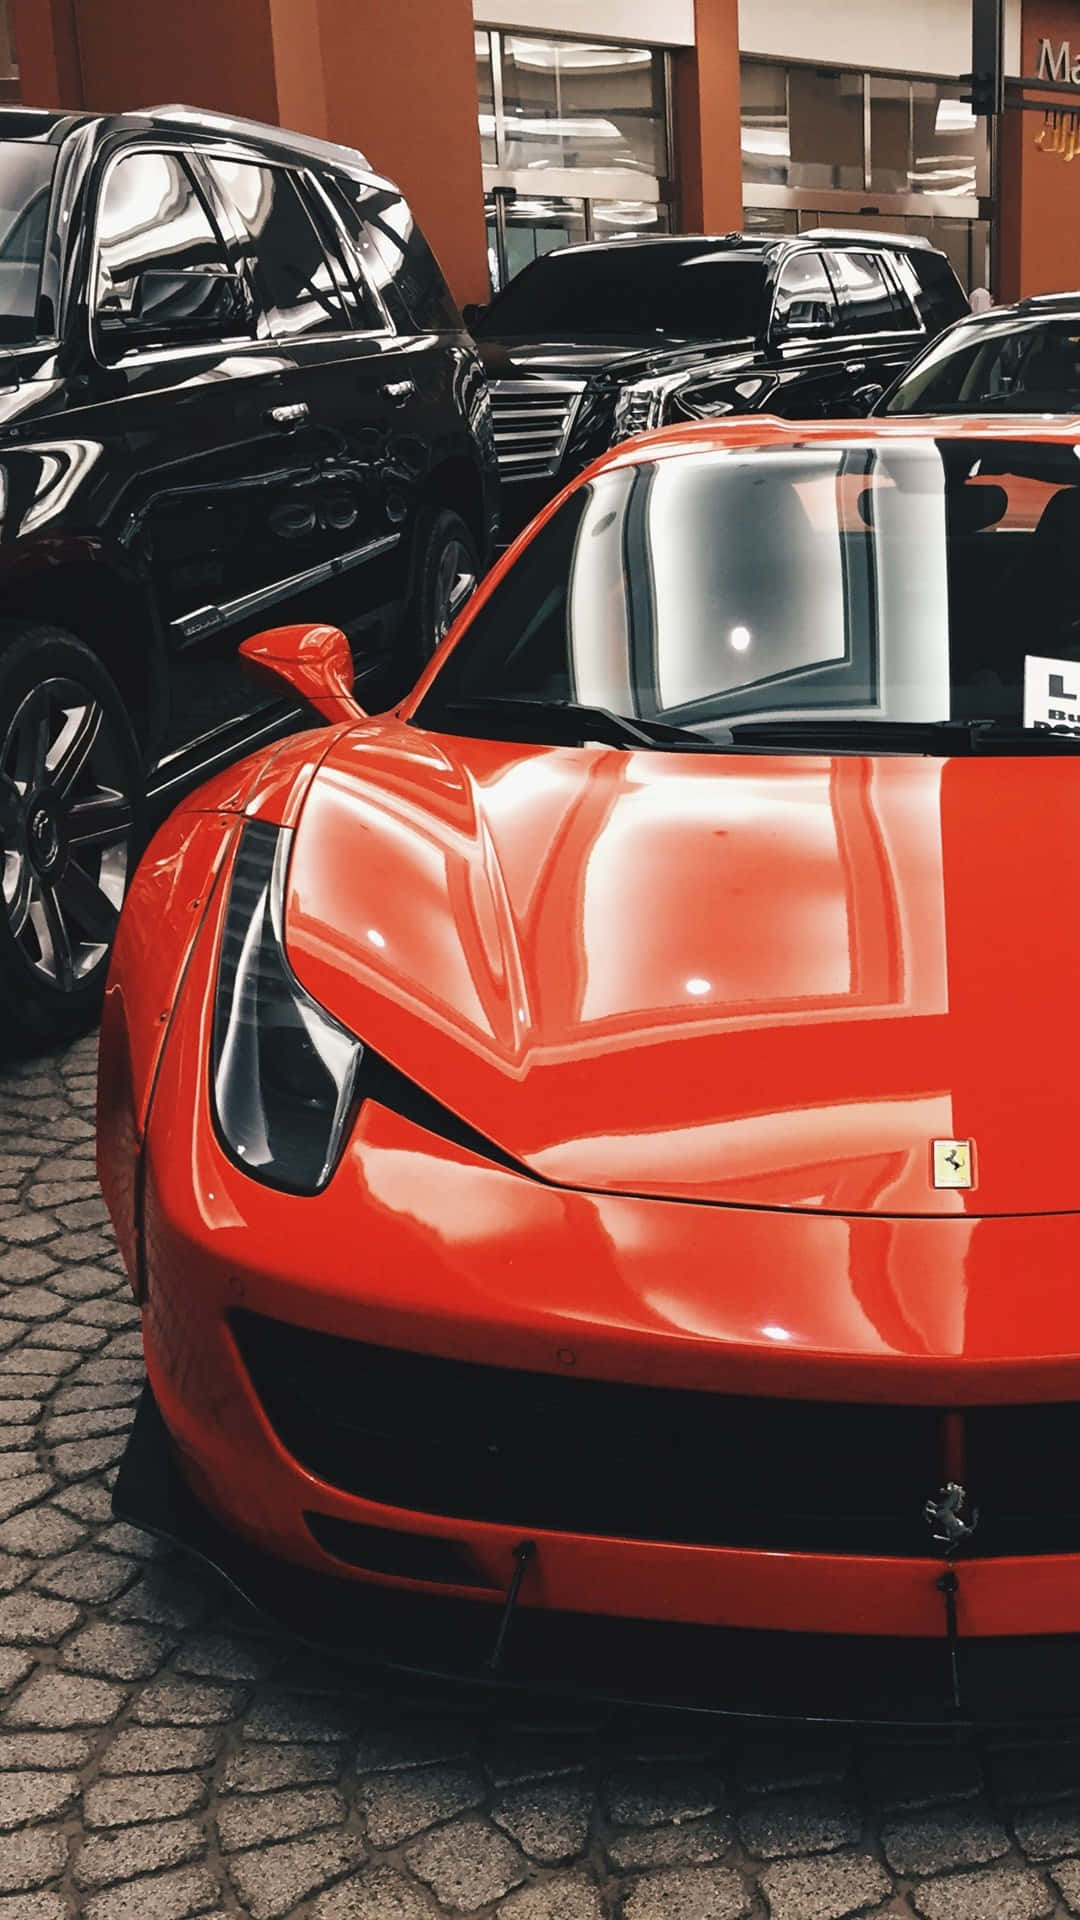 Desbloqueandoun Mundo De Velocidad Y Diseño Con El Nuevo Ferrari Iphone X. Fondo de pantalla